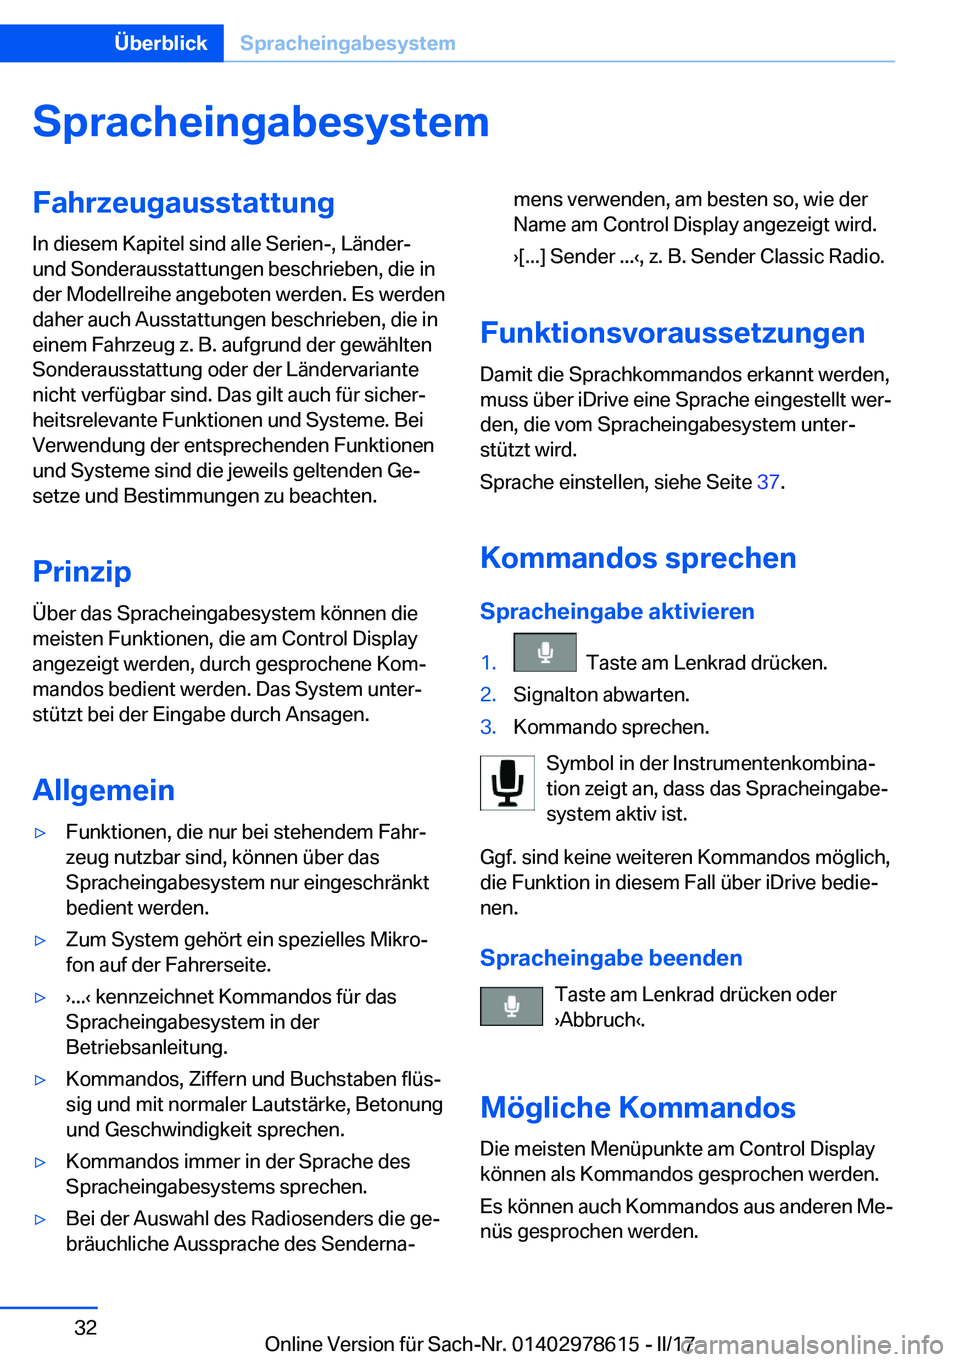 BMW 7 SERIES 2018  Betriebsanleitungen (in German) �S�p�r�a�c�h�e�i�n�g�a�b�e�s�y�s�t�e�m�F�a�h�r�z�e�u�g�a�u�s�s�t�a�t�t�u�n�g
�I�n� �d�i�e�s�e�m� �K�a�p�i�t�e�l� �s�i�n�d� �a�l�l�e� �S�e�r�i�e�n�-�,� �L�ä�n�d�e�r�-
�u�n�d� �S�o�n�d�e�r�a�u�s�s�t�a�